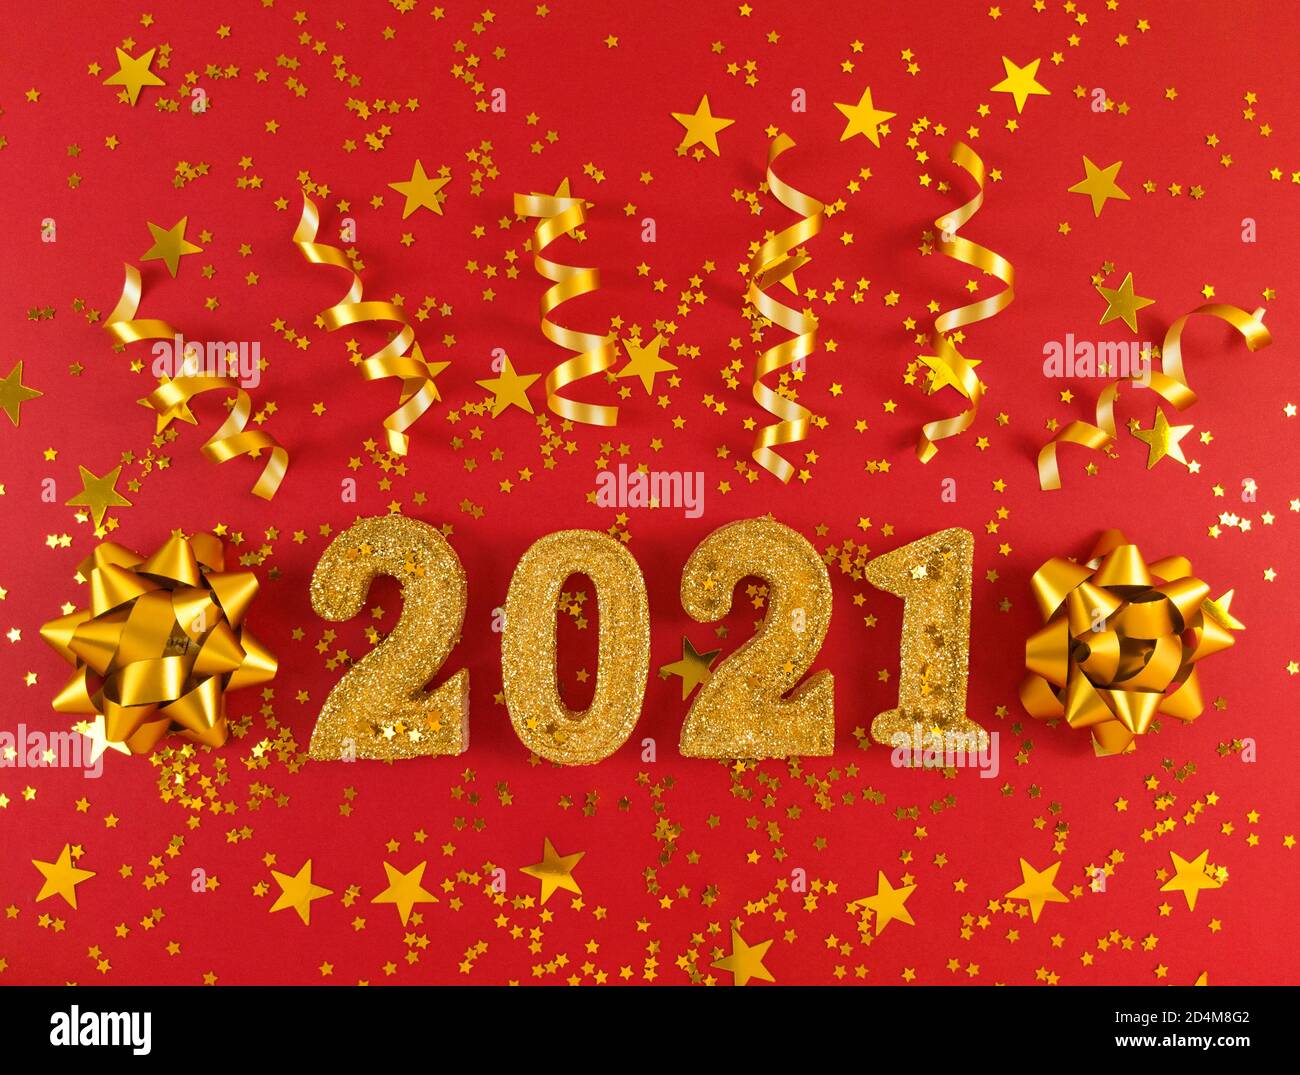 Grußkarte des neuen Jahres 2021. Goldene glitzernde Figuren, Sterne, Schleifen und Bänder auf rotem Hintergrund. Stockfoto